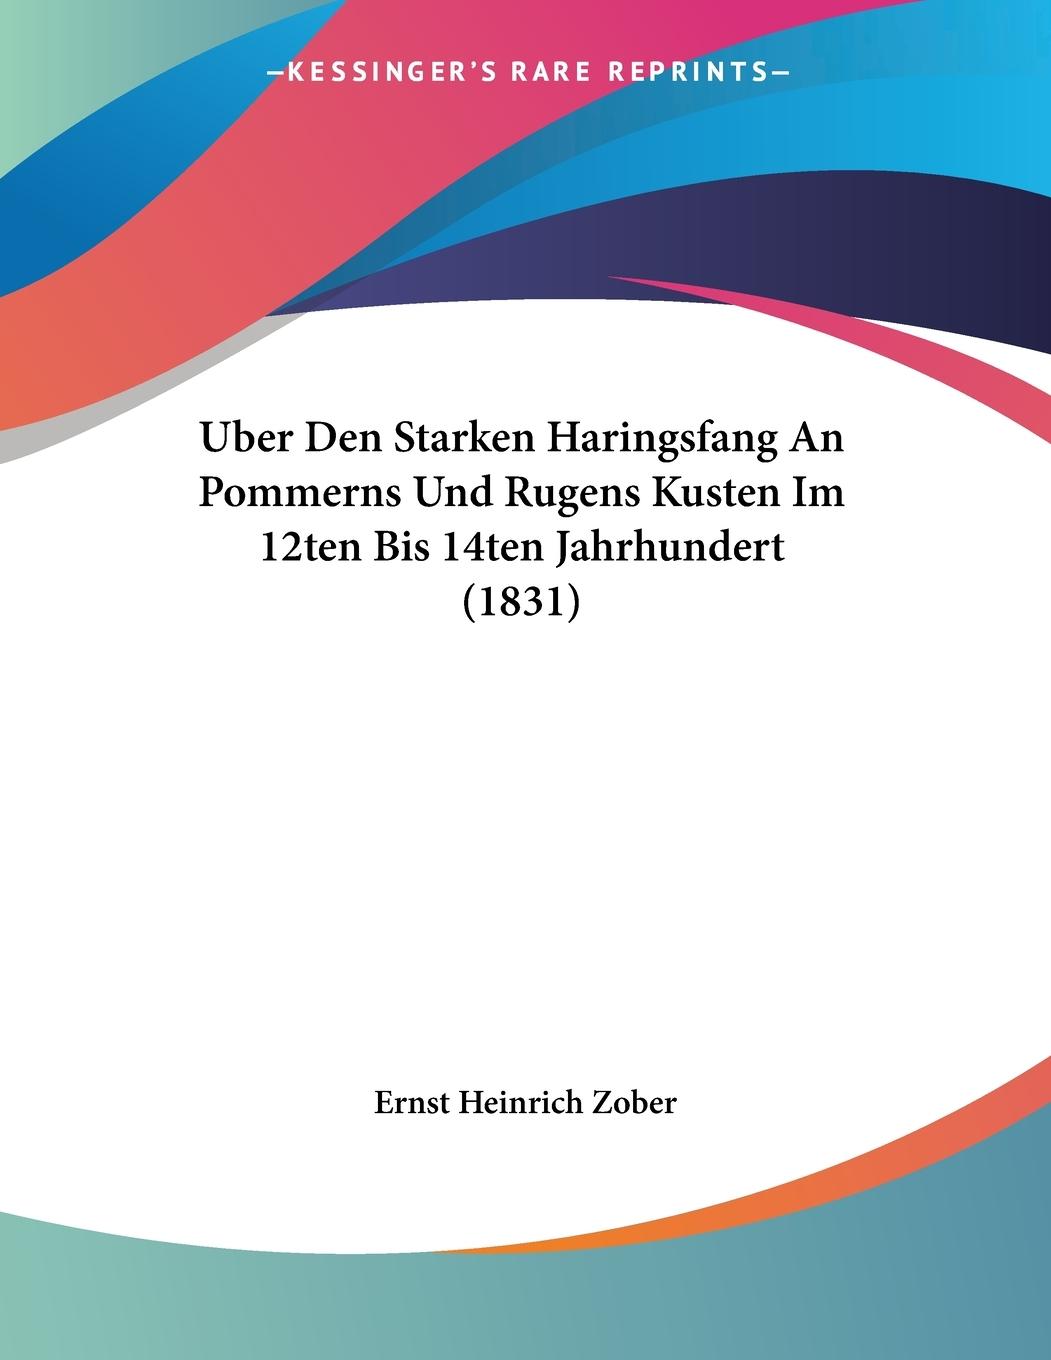 Uber Den Starken Haringsfang An Pommerns Und Rugens Kusten Im 12ten Bis 14ten Jahrhundert (1831) - Zober, Ernst Heinrich